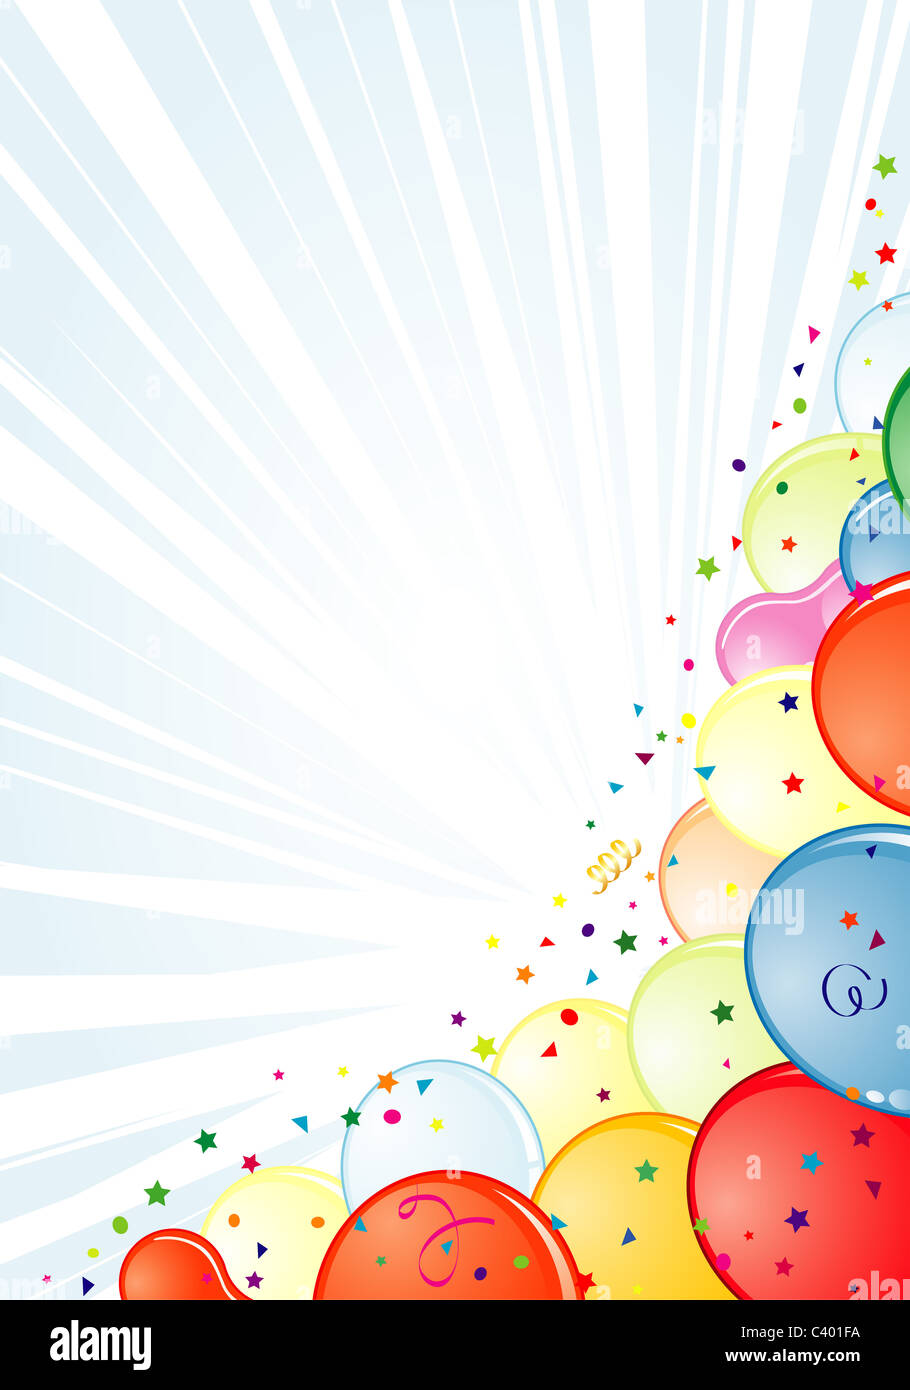 Geburtstag-Rahmen mit Ballon, Streamer und Konfetti, Element für Design,  Vektor-illustration Stockfotografie - Alamy